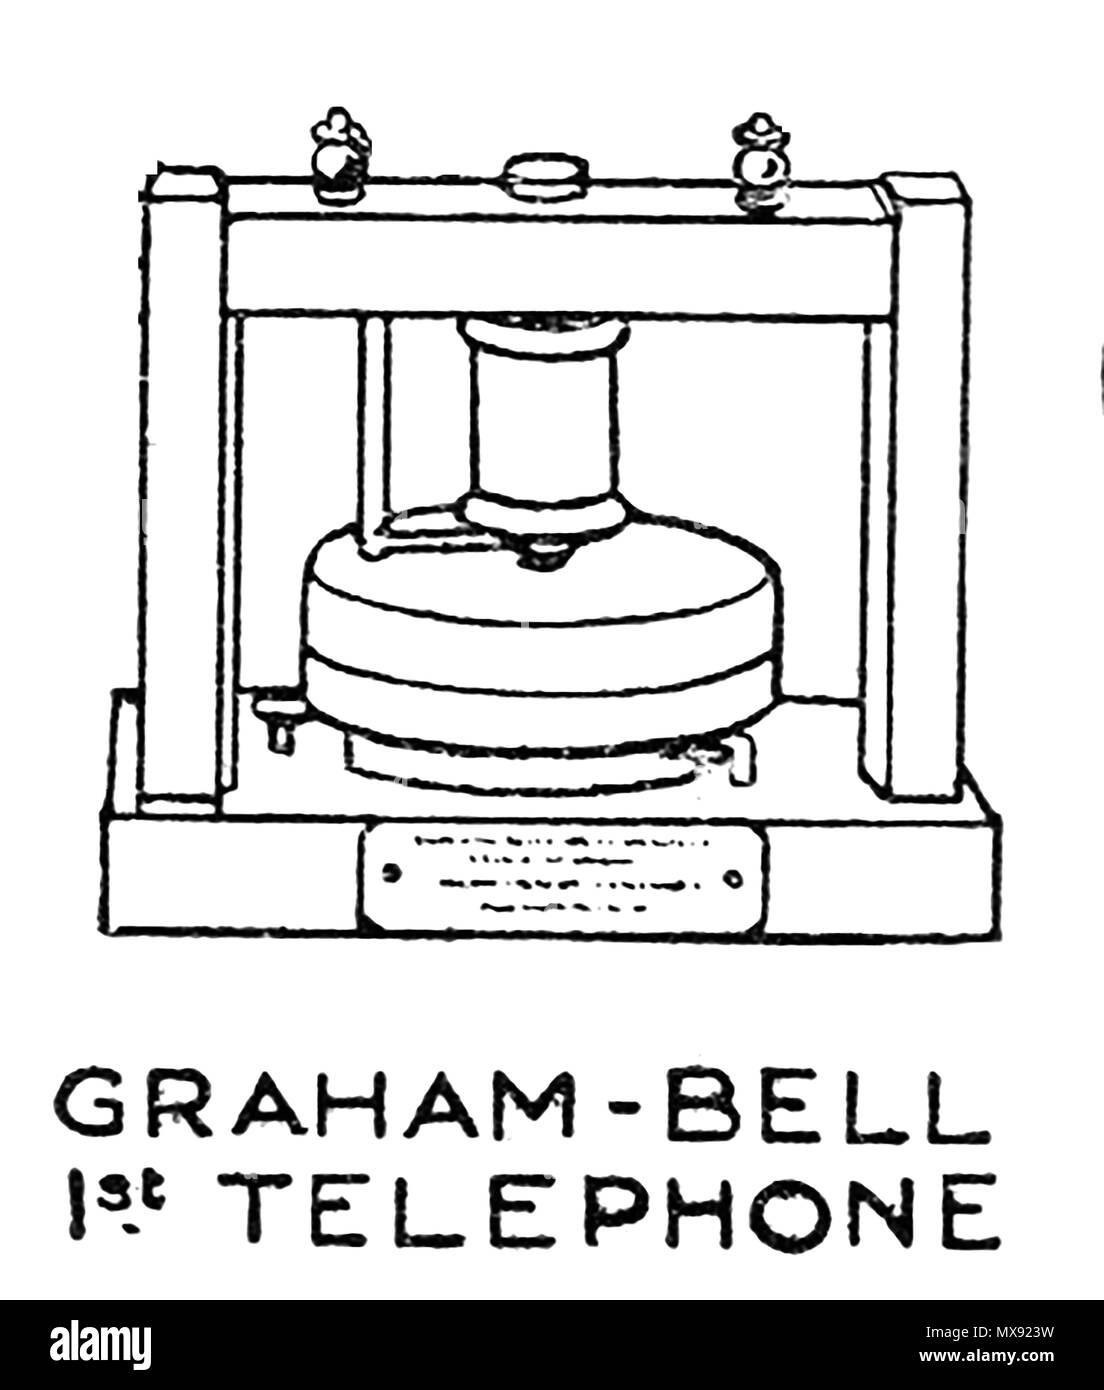 Primi apparecchi telefonici - Un 1930 Illustrazione di Graham Bell del primo dispositivo telefonico Foto Stock